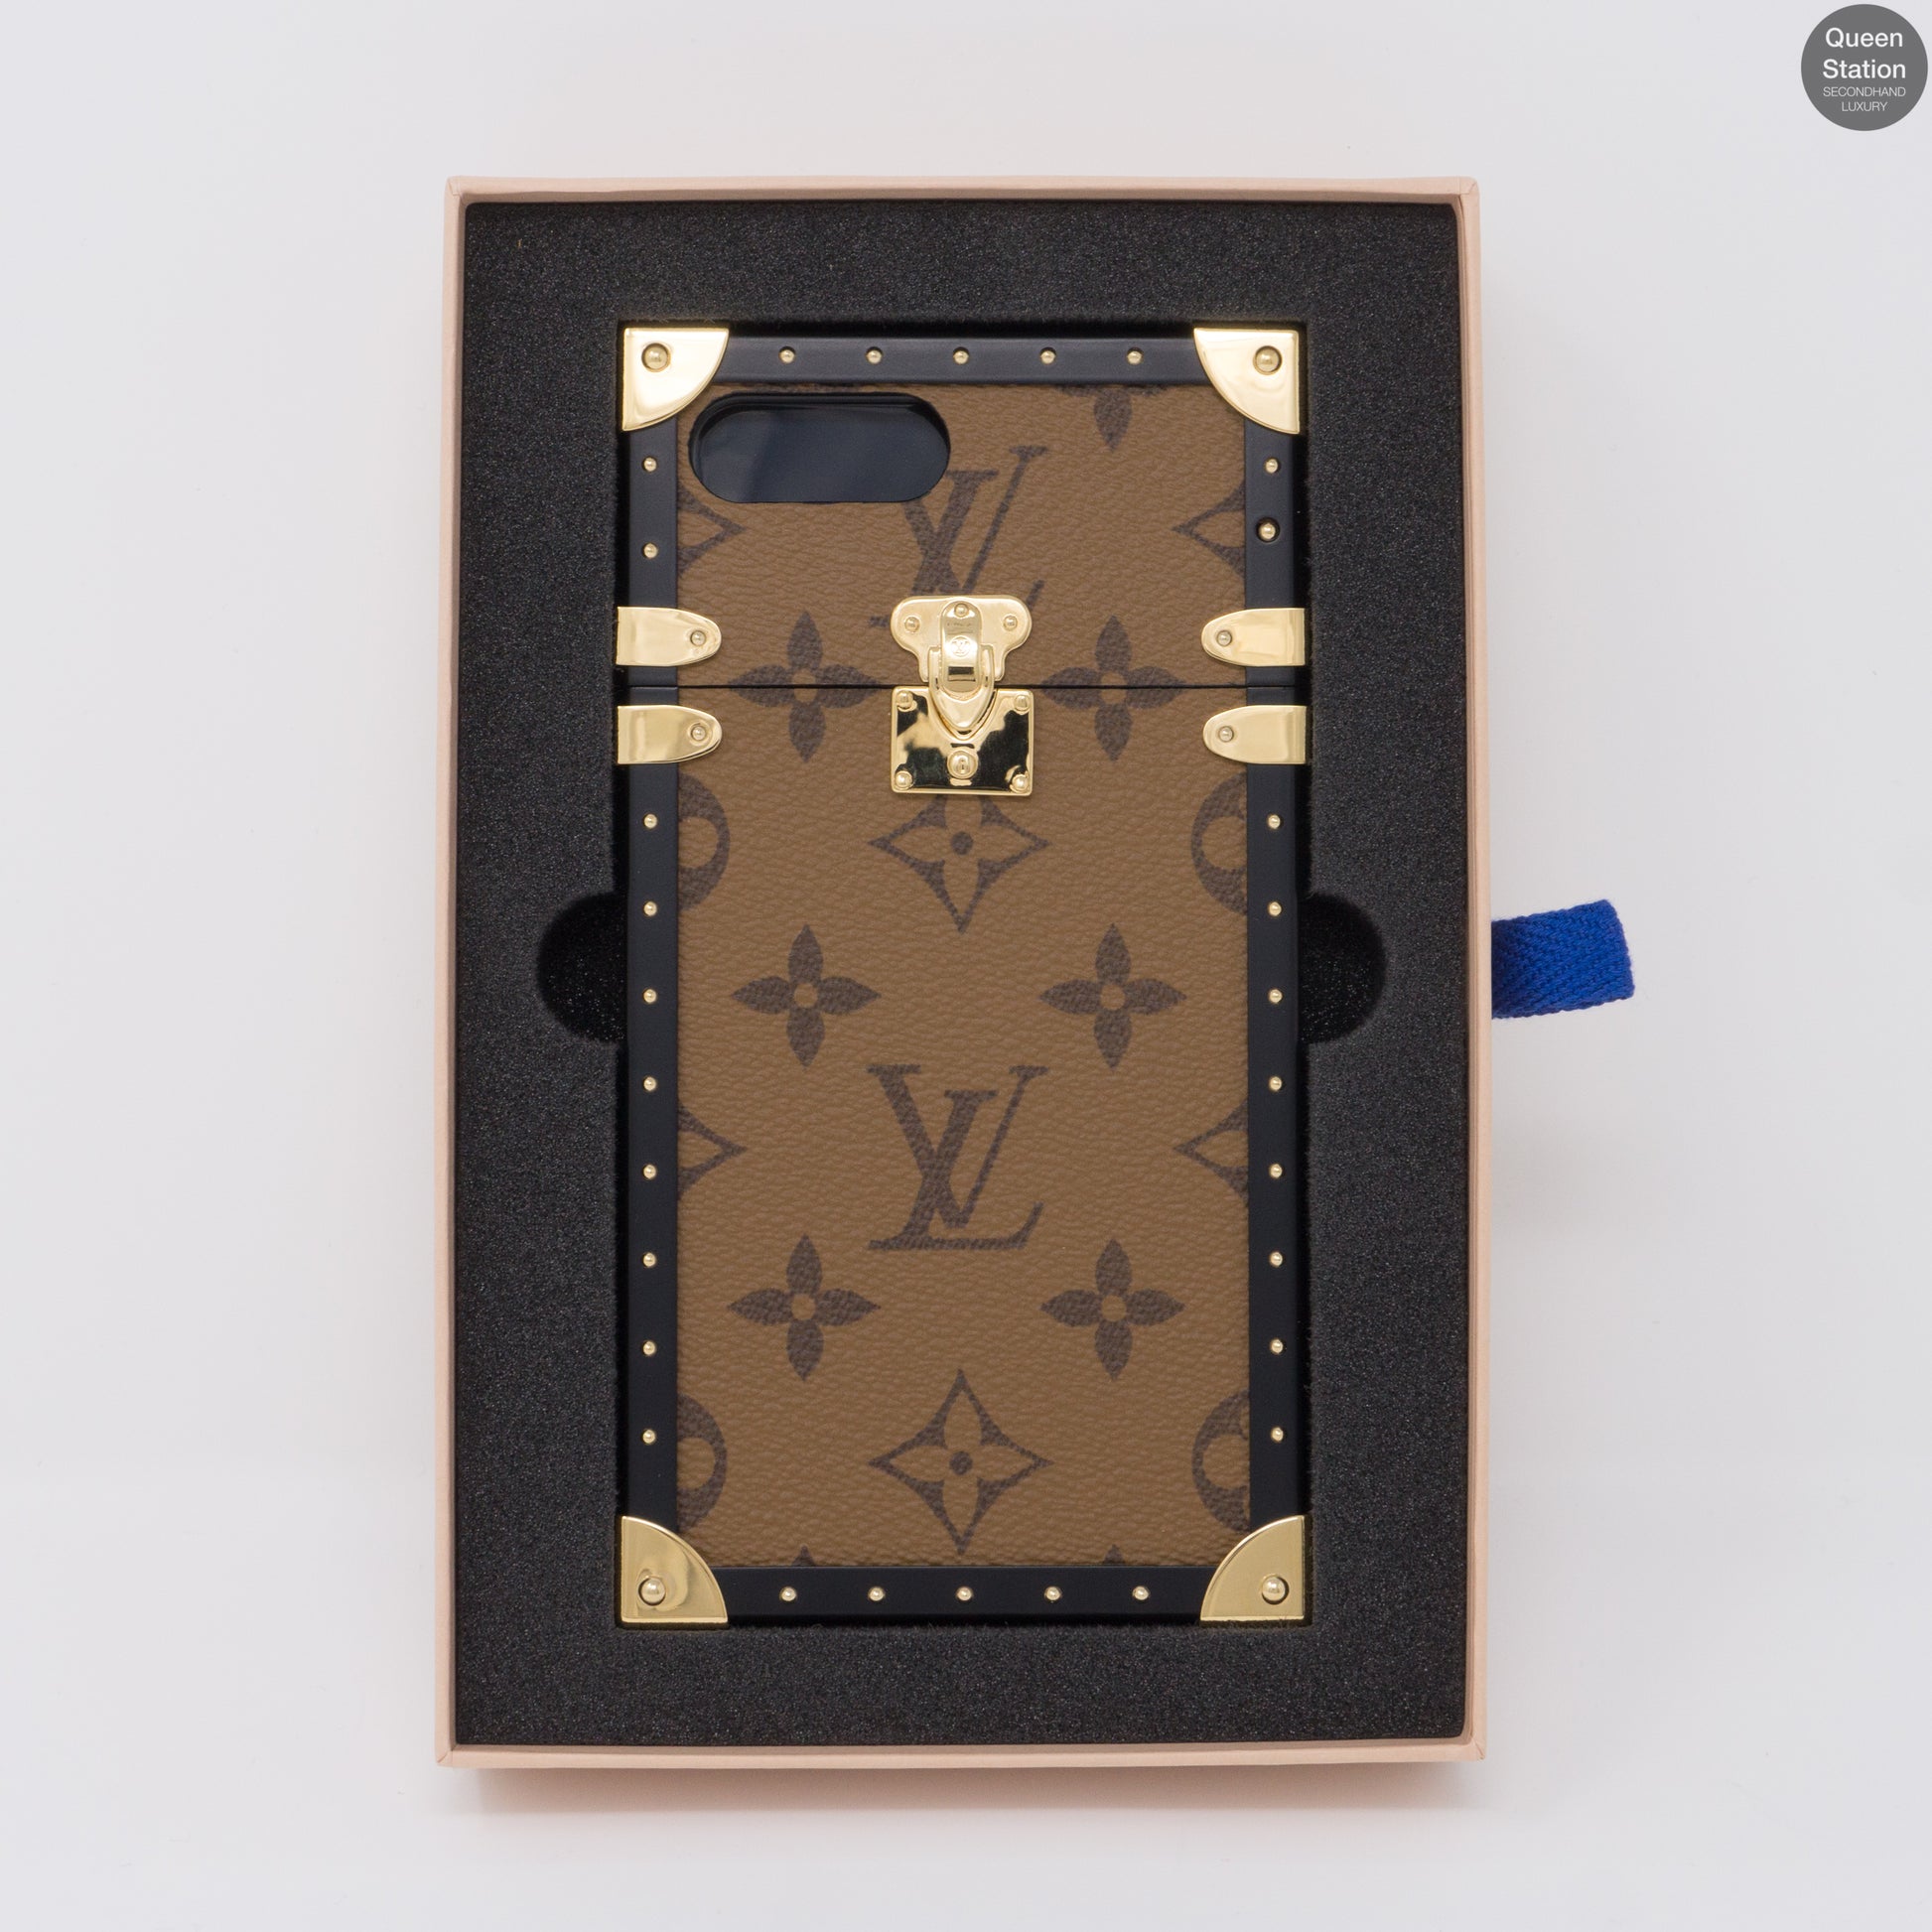 Case for iPhone 8 PLUS : Louis Vuitton logo